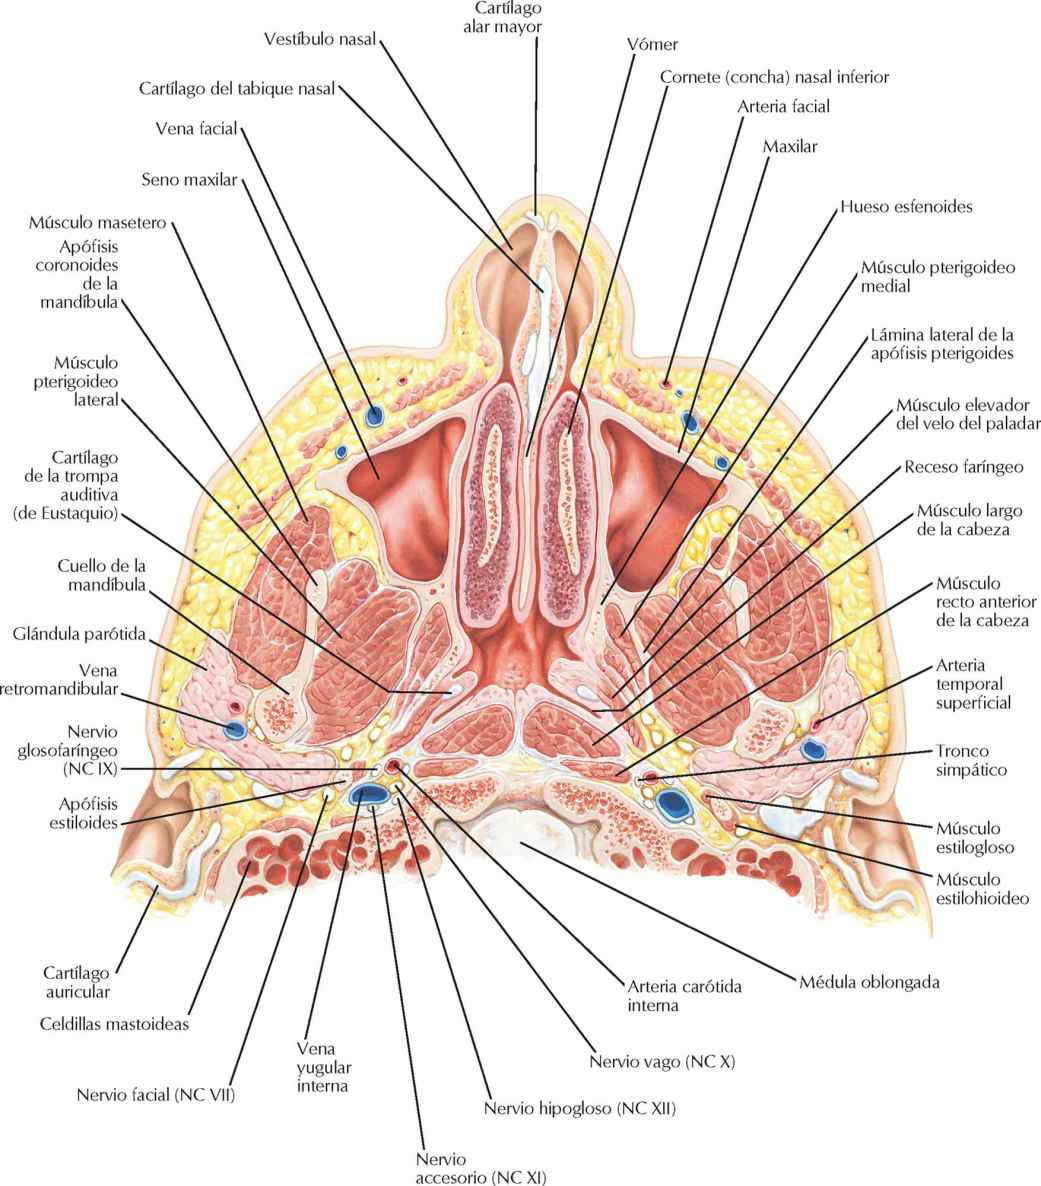 Cavidad nasal y seno maxilar: sección
transversal.